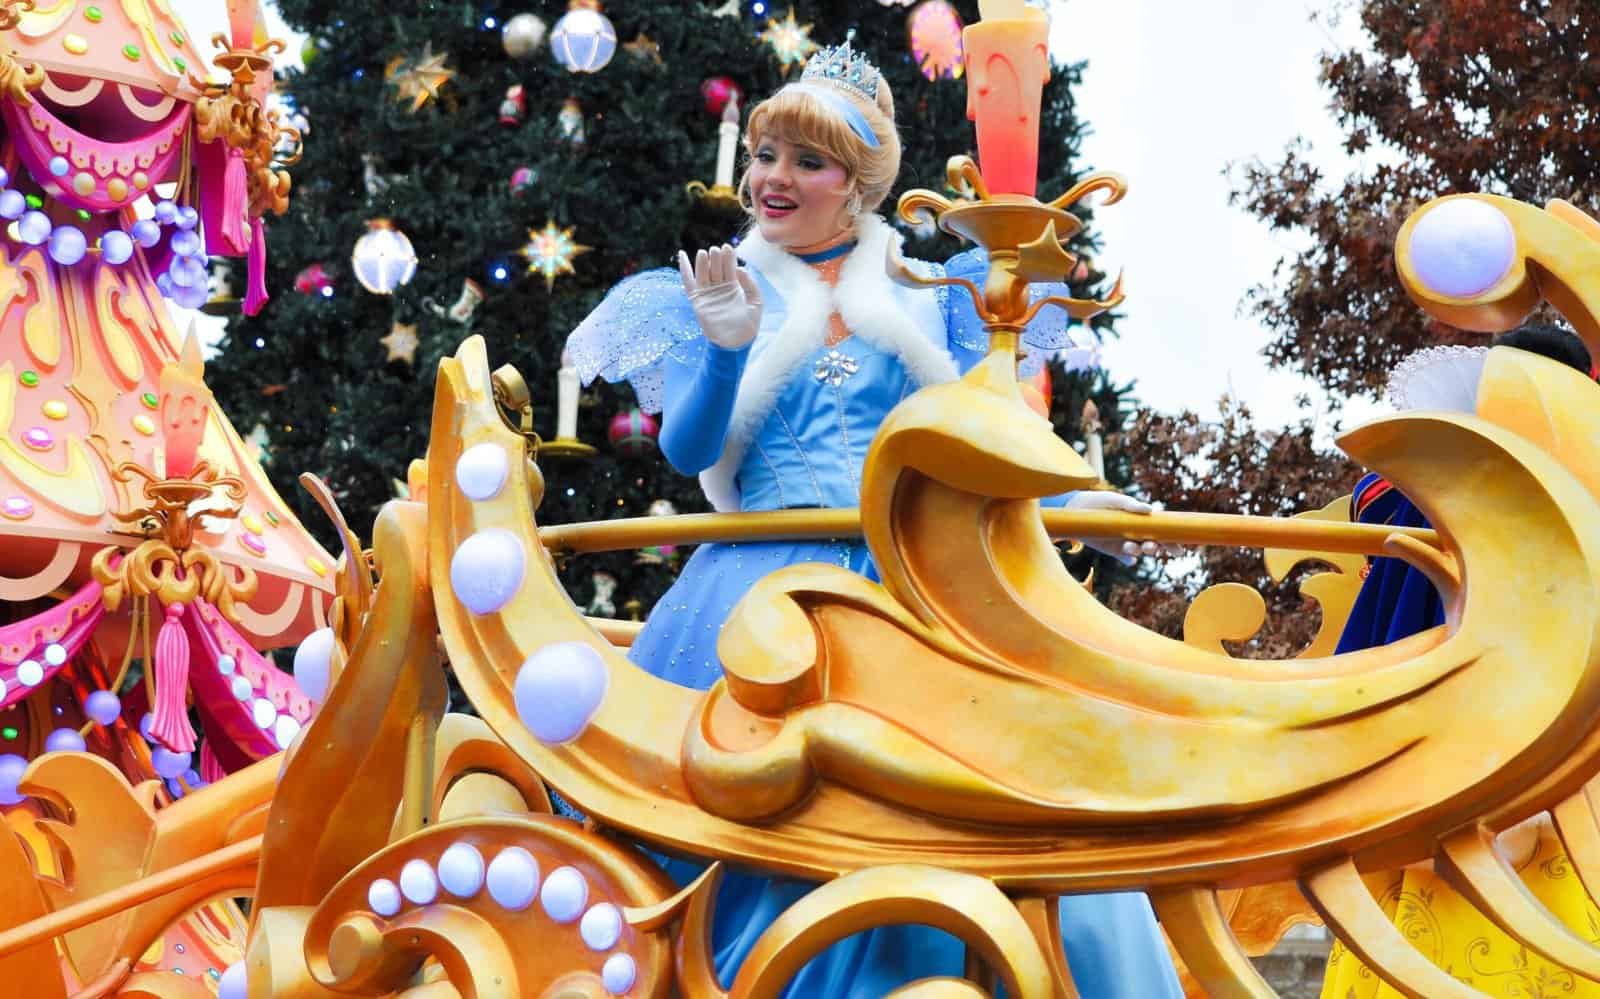 Cendrillon sur un char lors du défilé de Noël de Disneyland Paris.